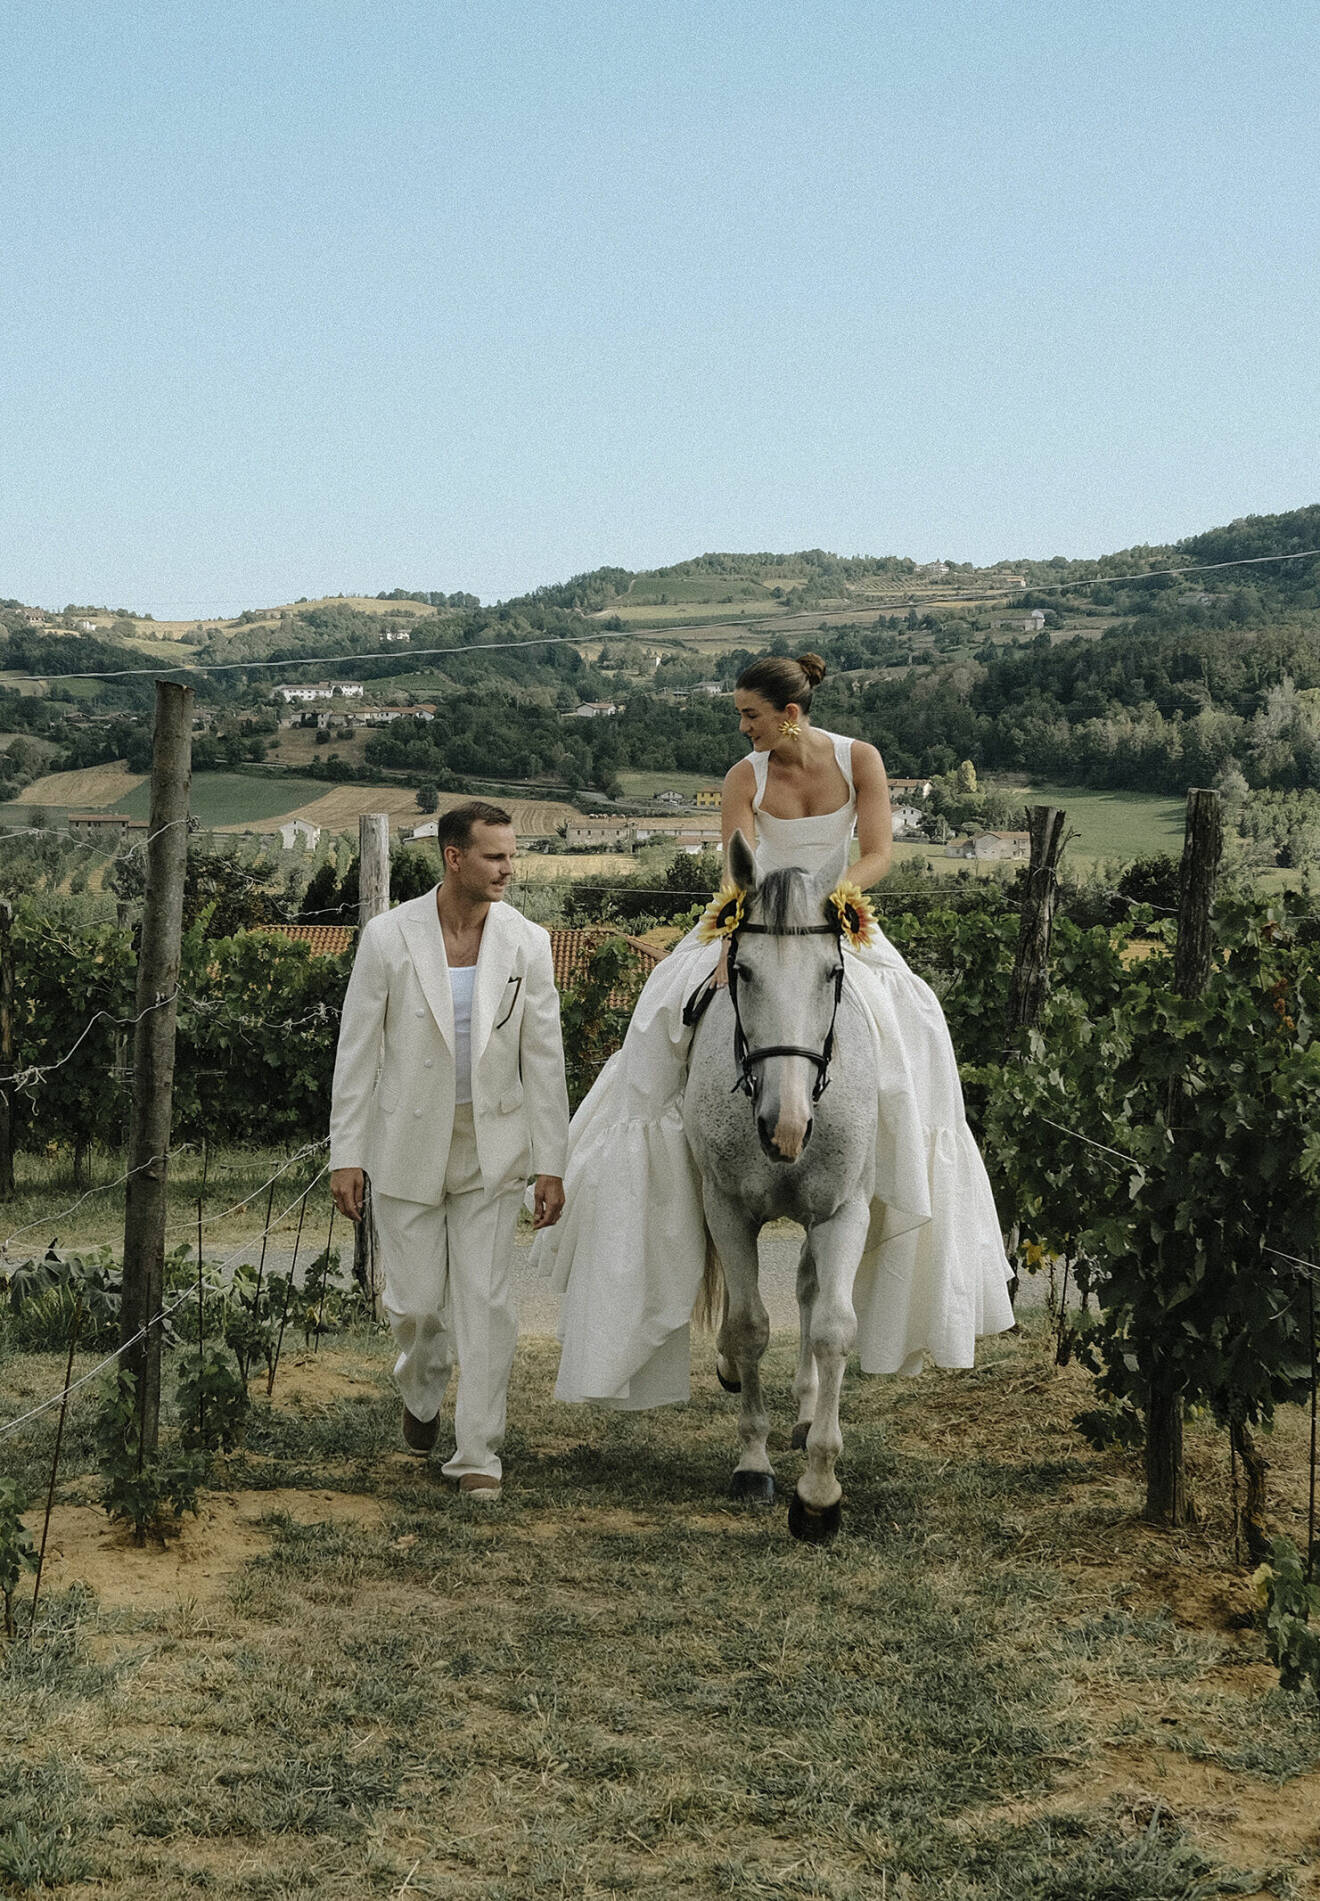 Linn och Felix gör entré på sin bröllopsdag, till häst genom vingårdarna.